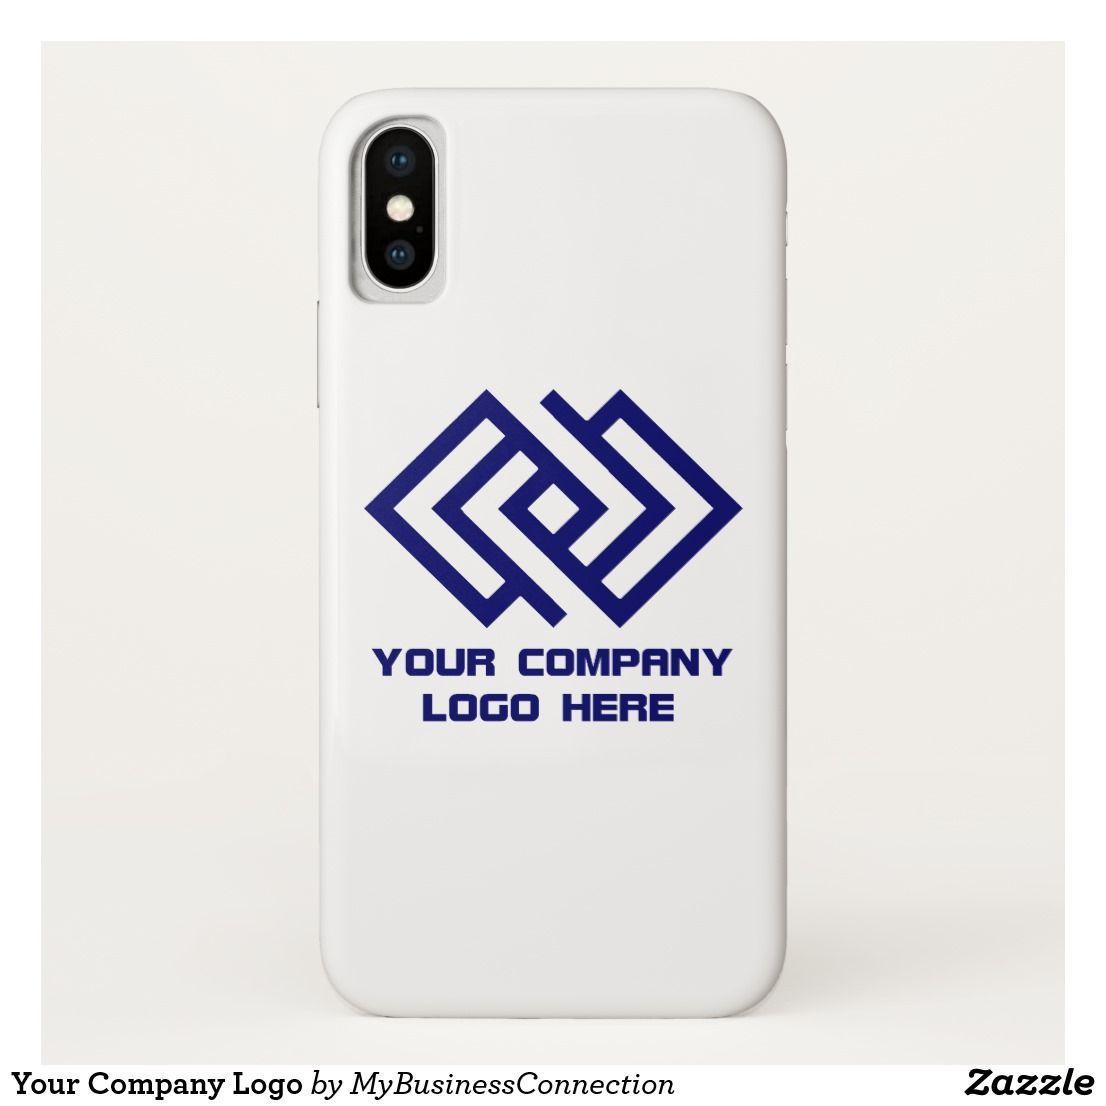 Phone Cases Company Logo - Your Company Logo iPhone X Case. iPhone X Cases. iPhone